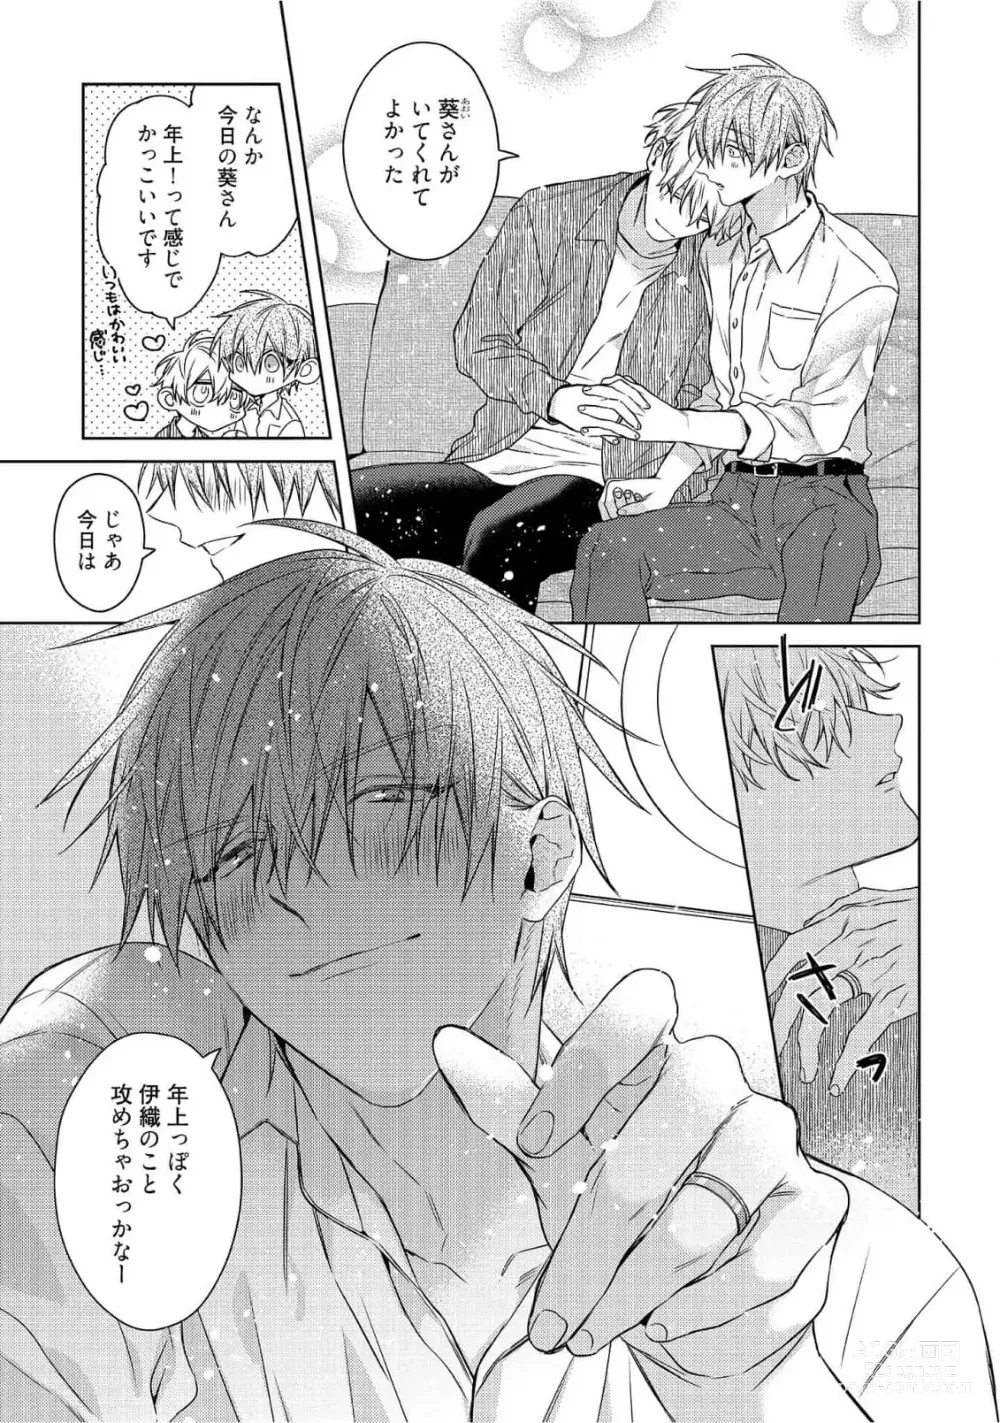 Page 271 of manga Motto! Ecchi wa shuu 7 Kibou Desu!